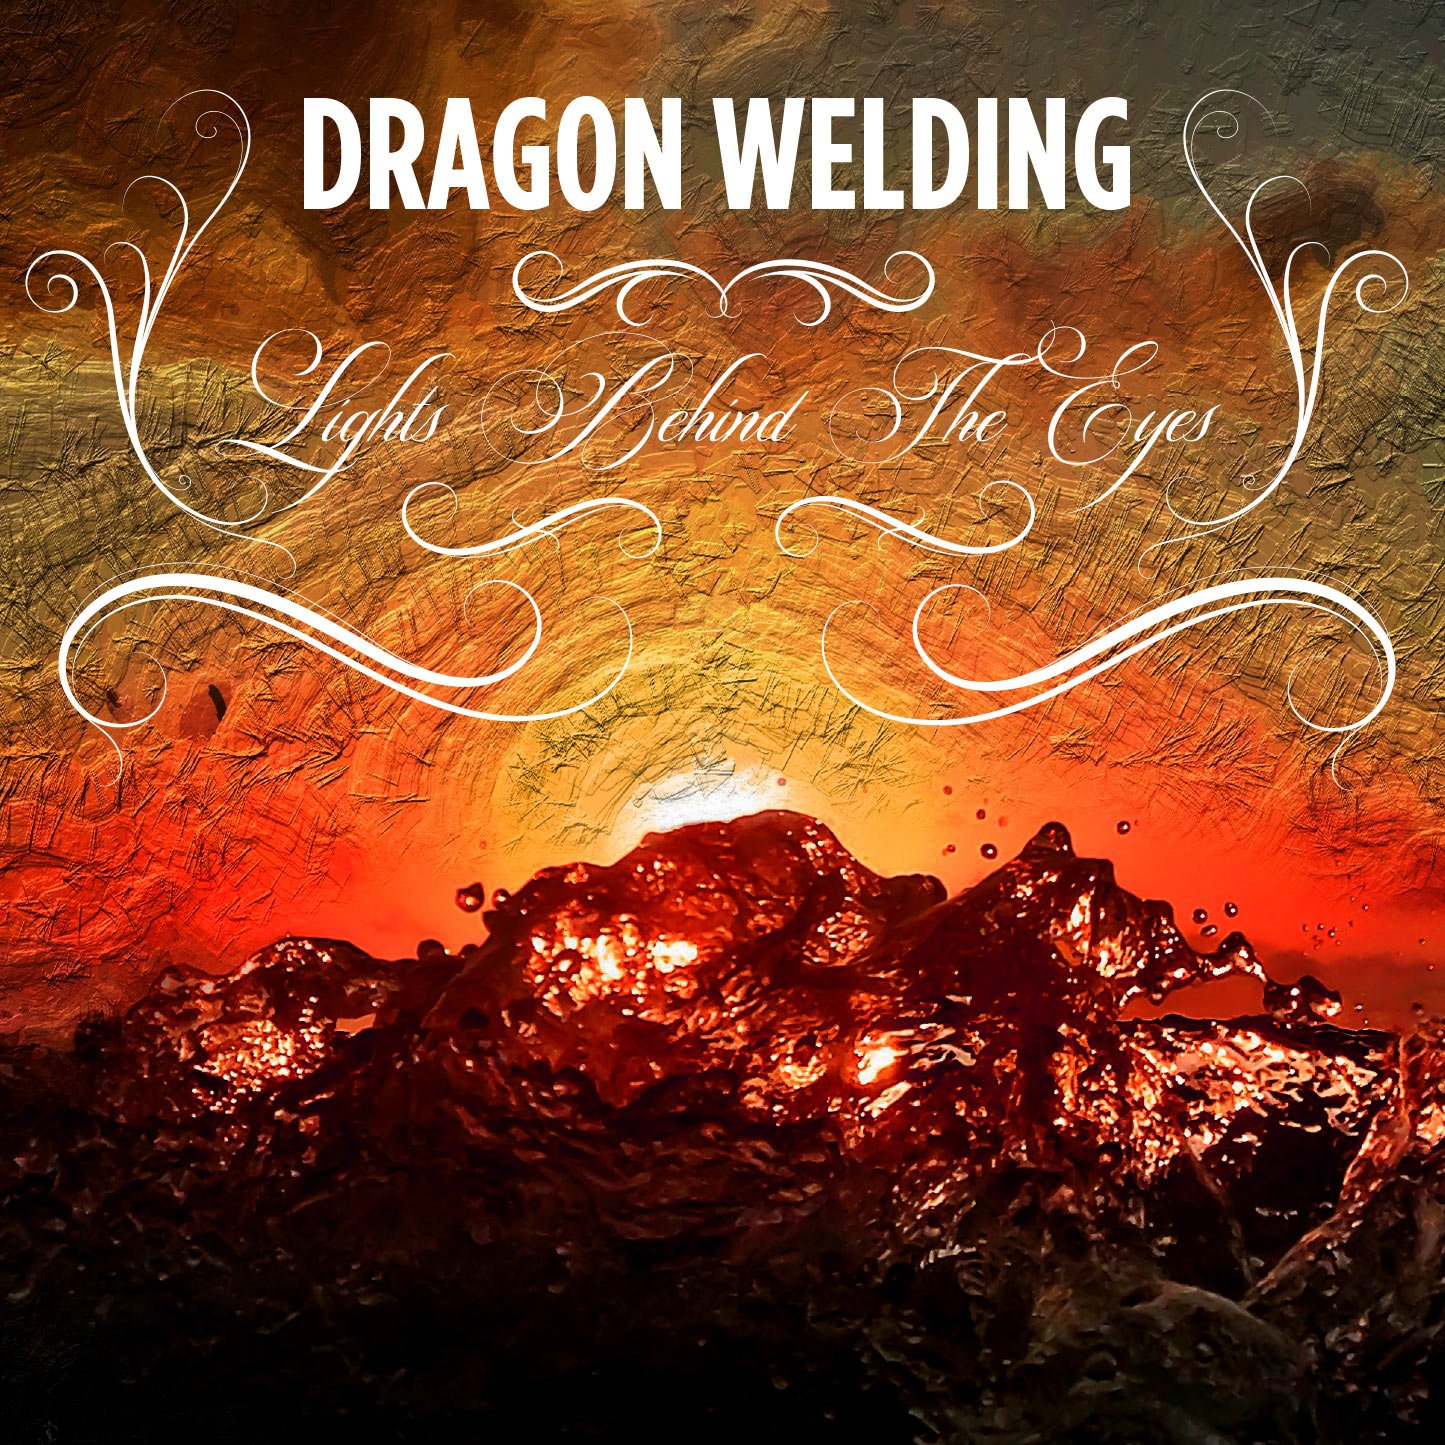 Dragon Eyes - Album by DRAGON EYES